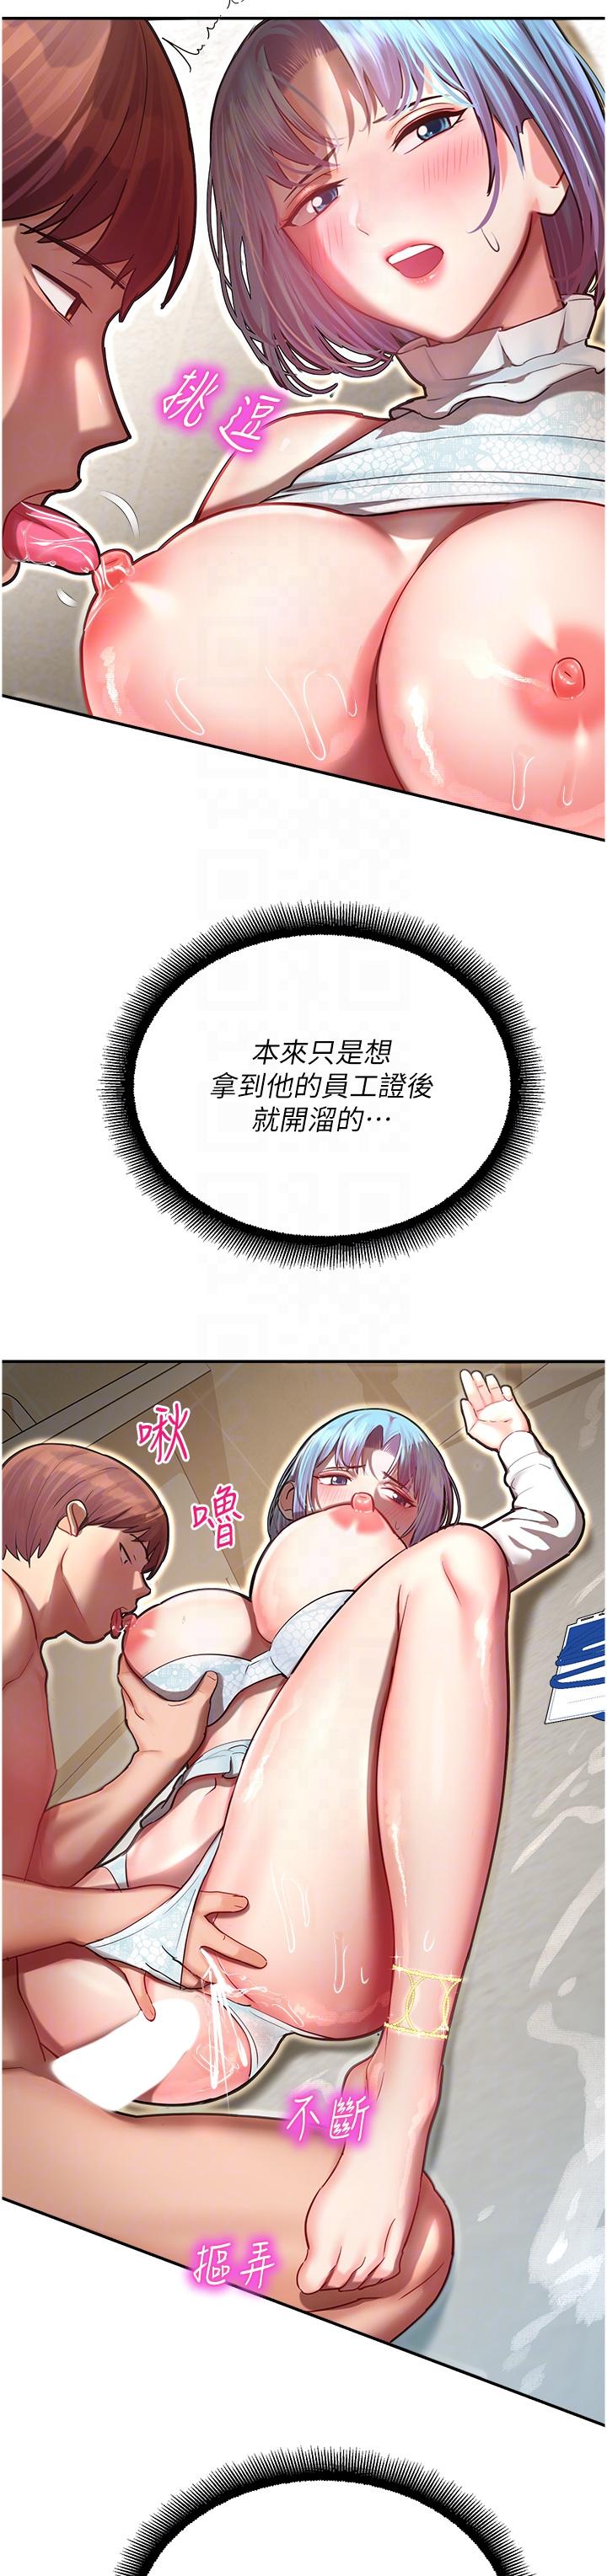 韩国污漫画 命運濕樂園 第10话-前所未有的高潮 14